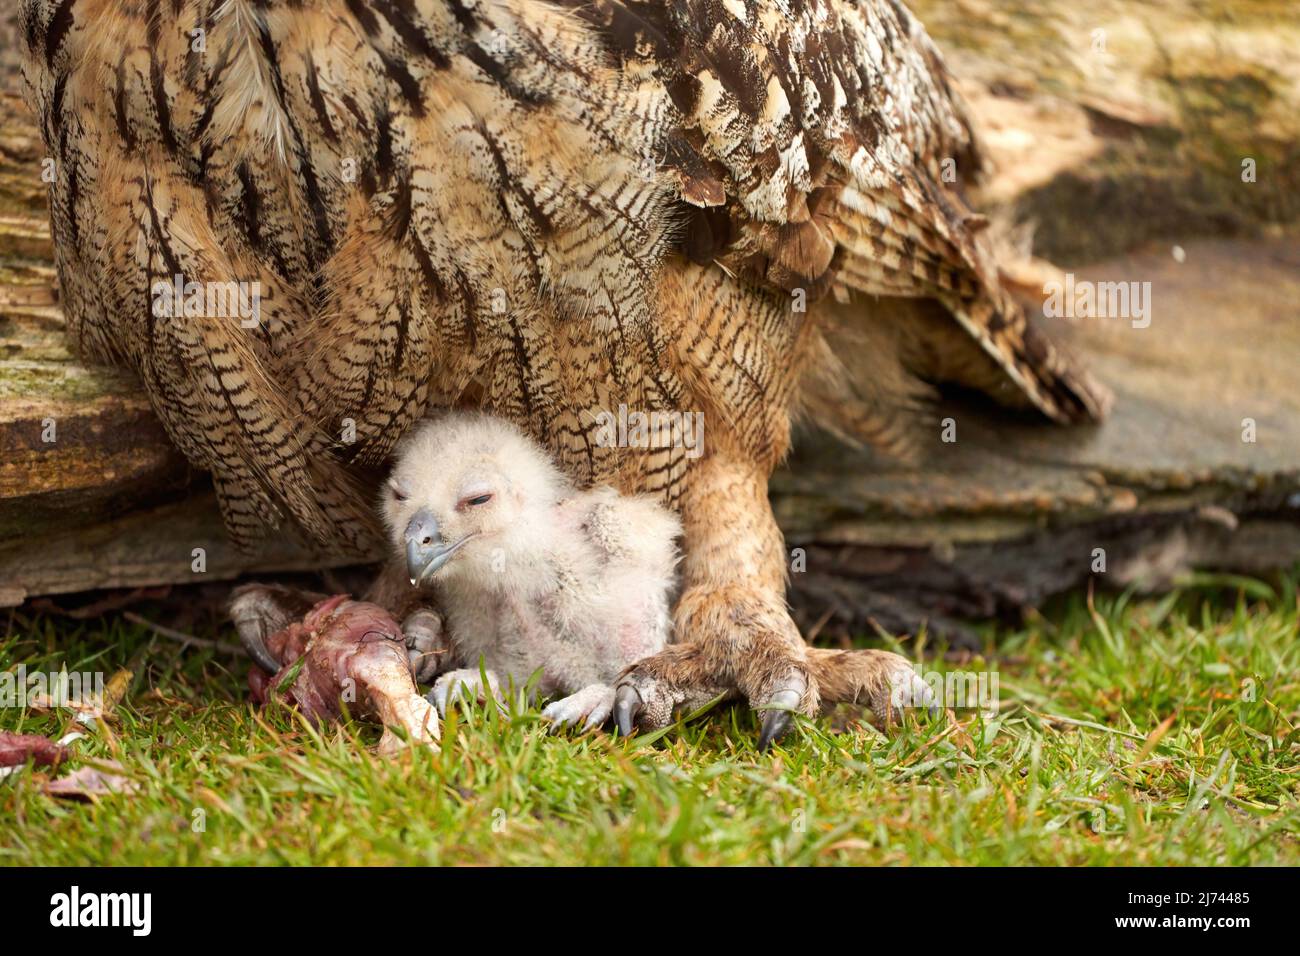 Hibou sauvage de l'aigle eurasien poussin à l'extérieur du poussin blanc est instable manger un morceau de viande.L'oiseau de six jours se trouve à côté des jambes de la mère Banque D'Images